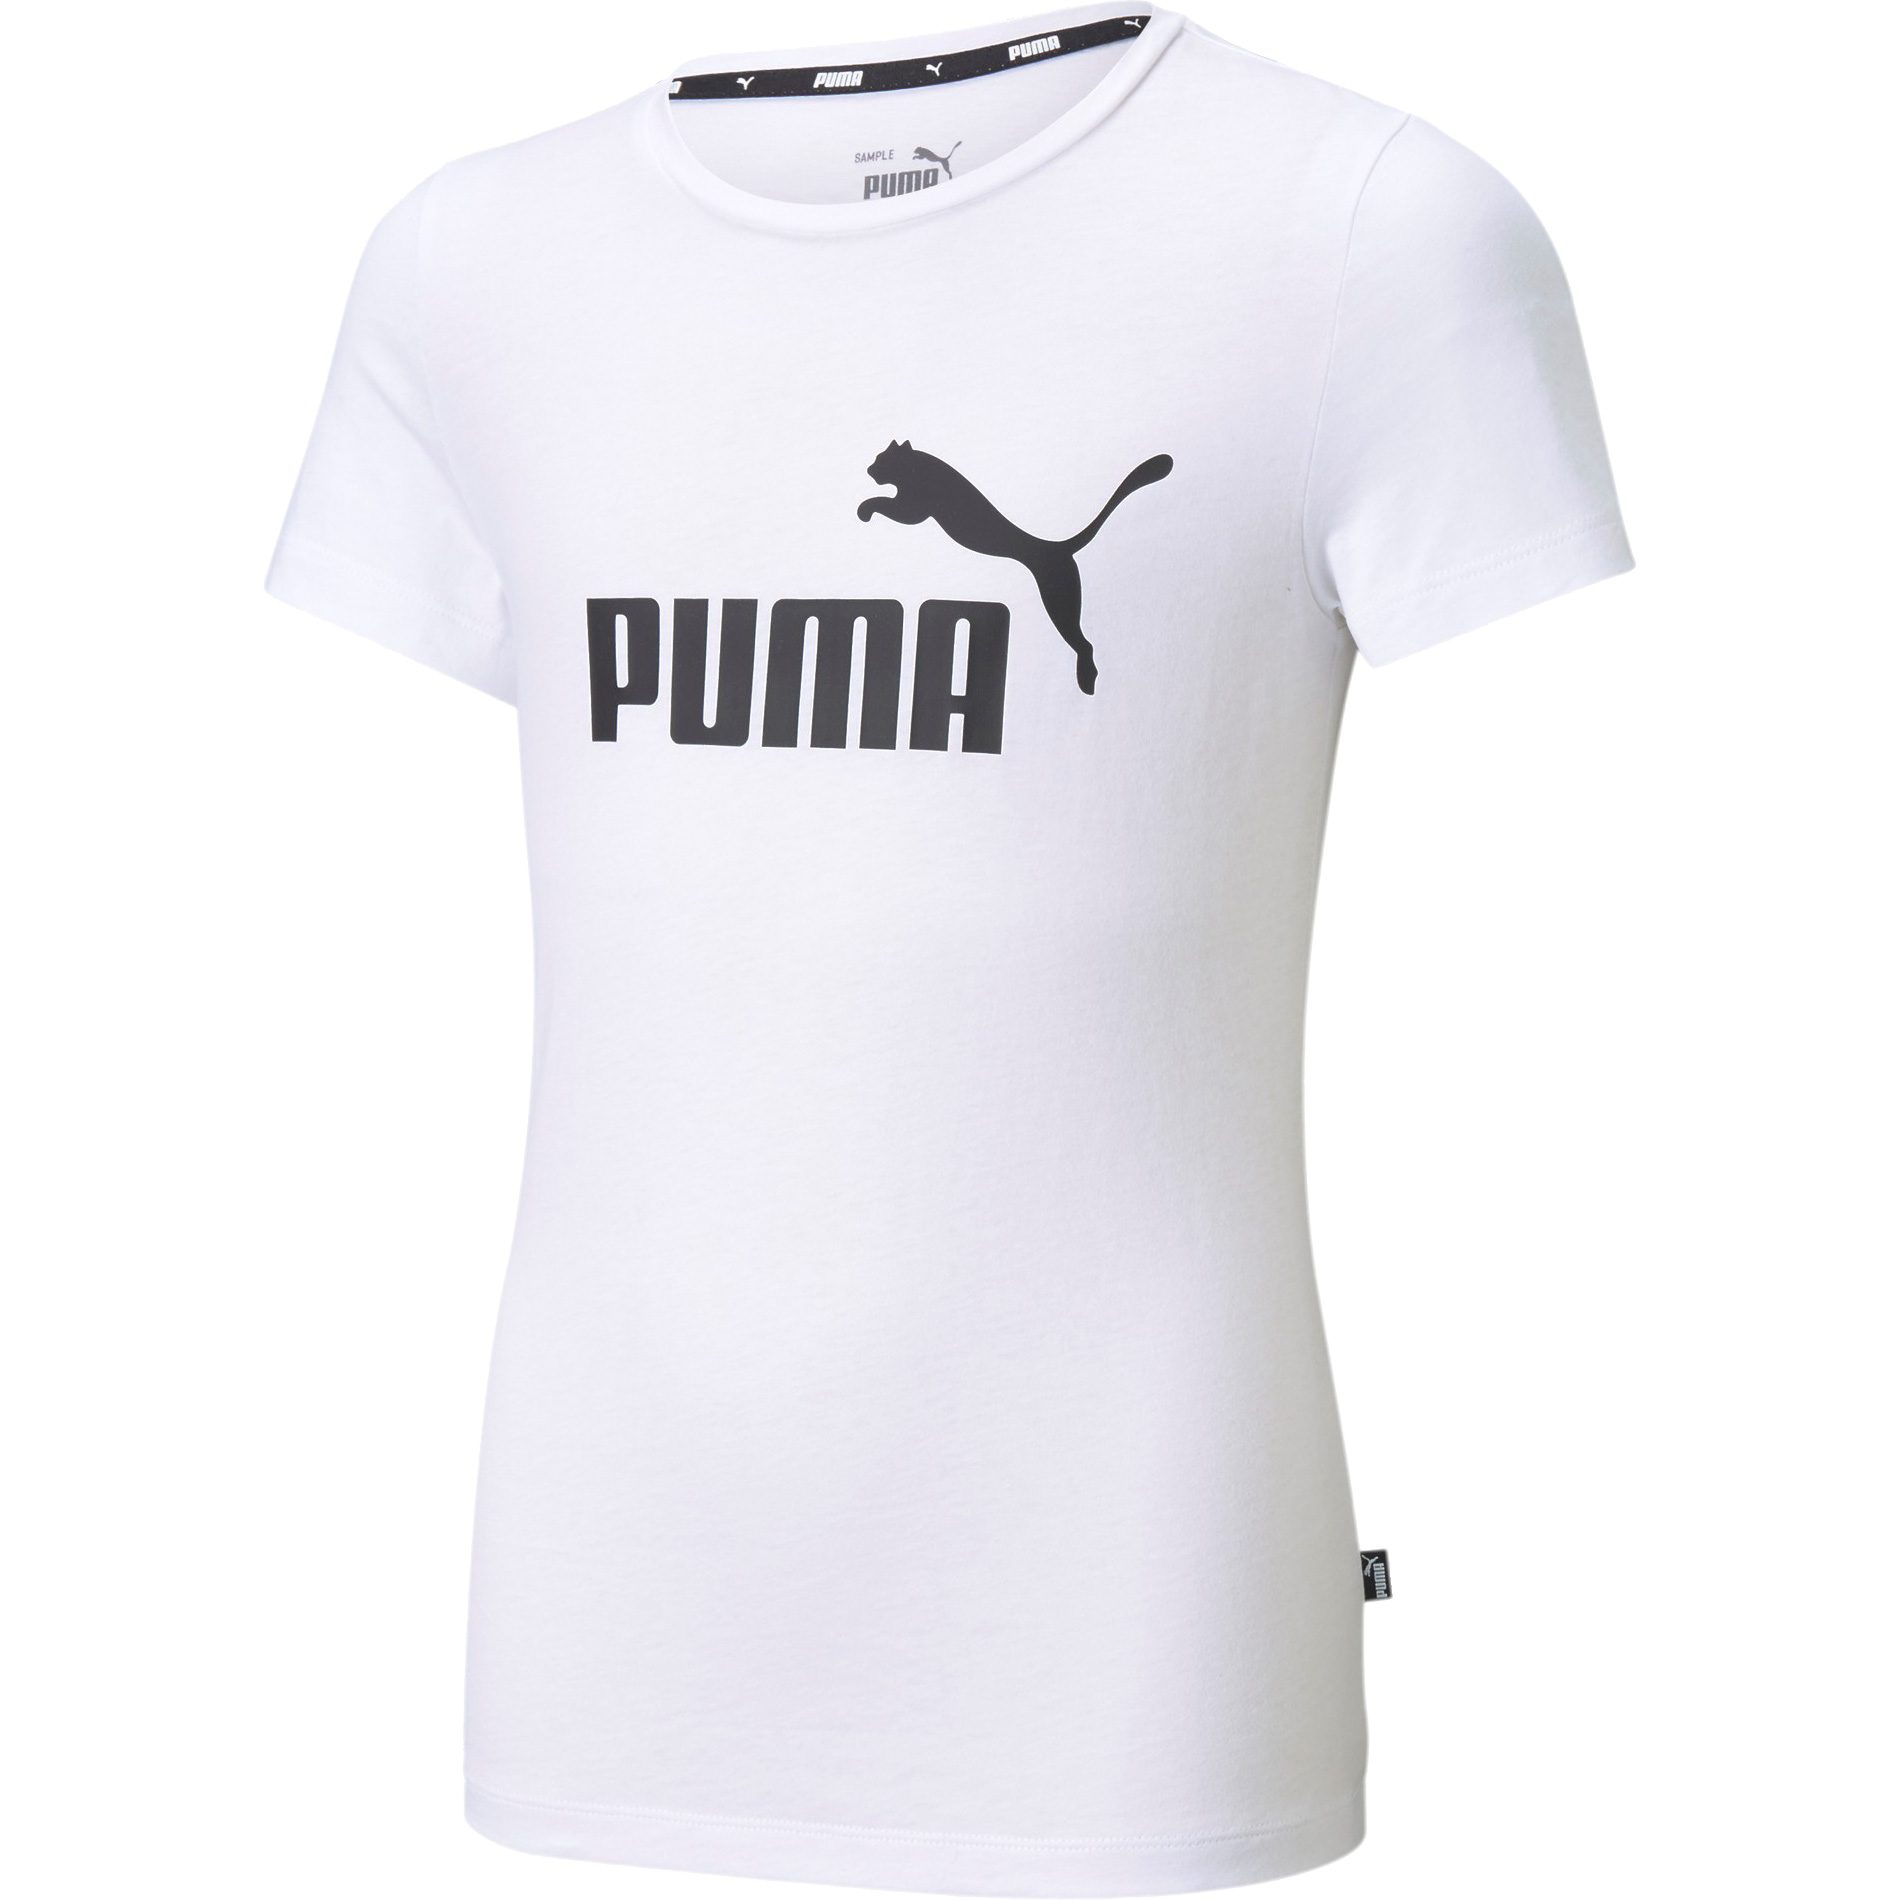 Puma - Essentials Logo T-Shirt kaufen Bittl white Mädchen Shop puma Sport im